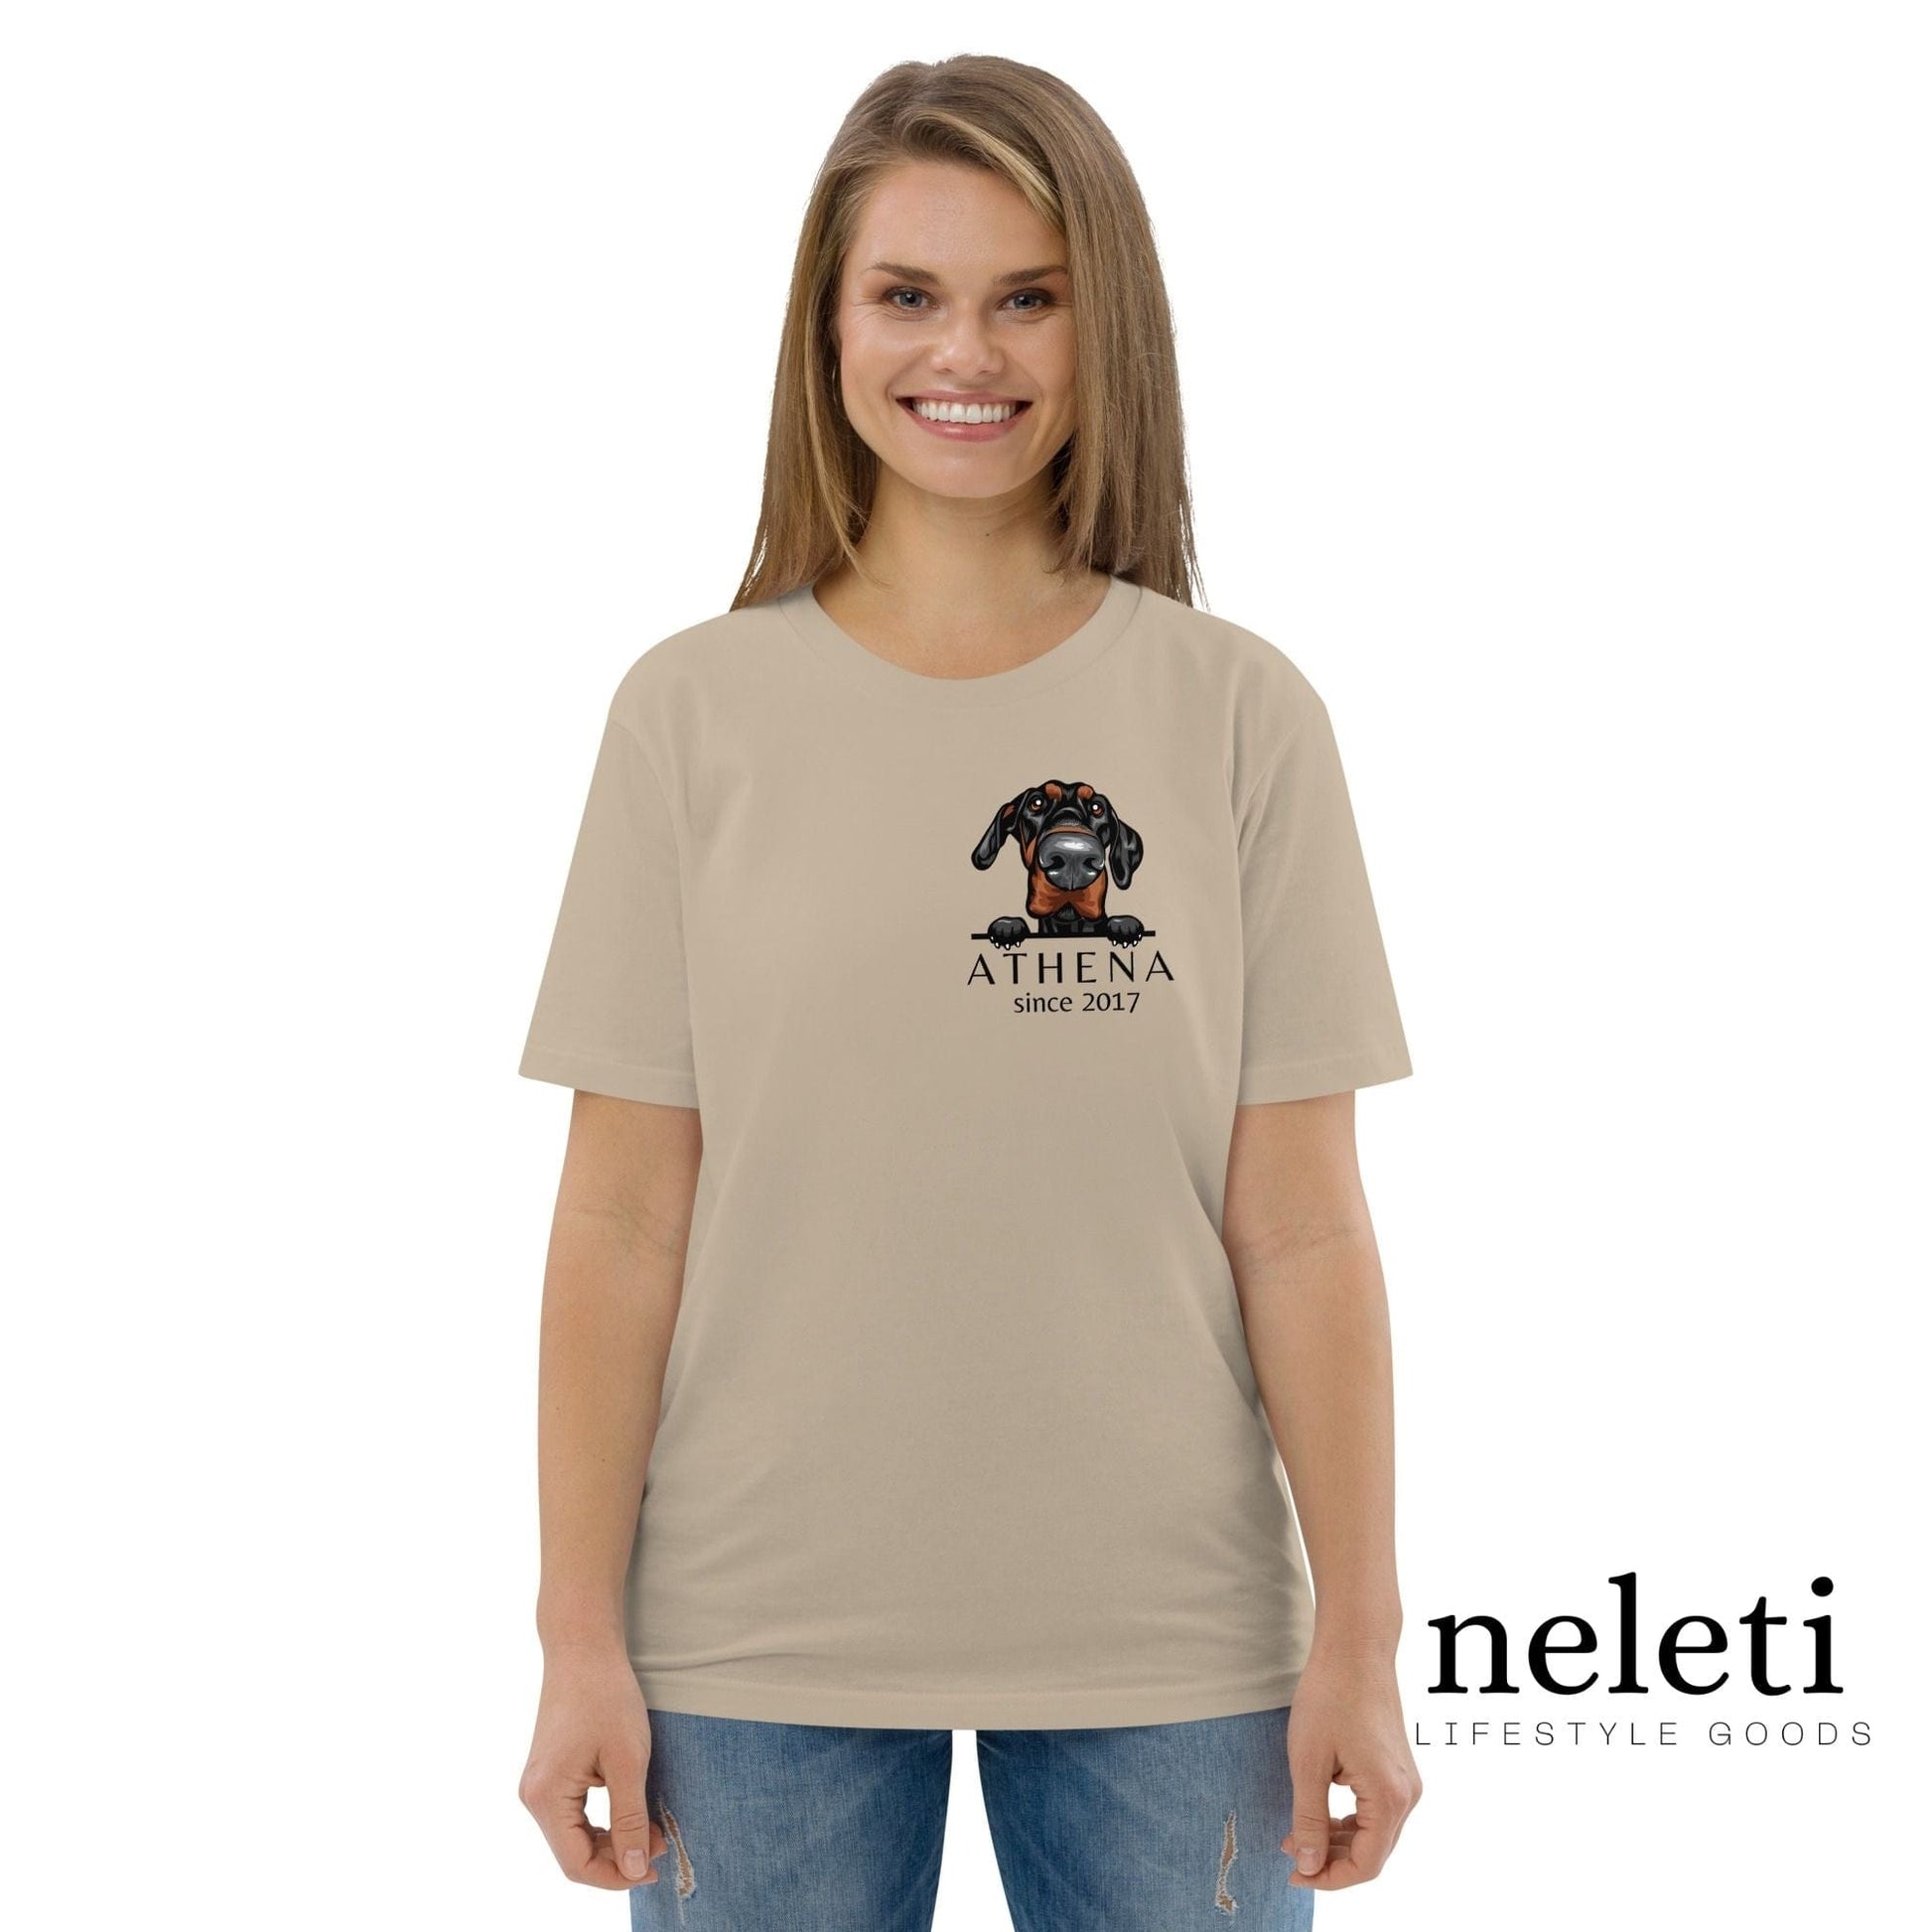 neleti.com-custom-desert-dust-shirt-for-dog-mom